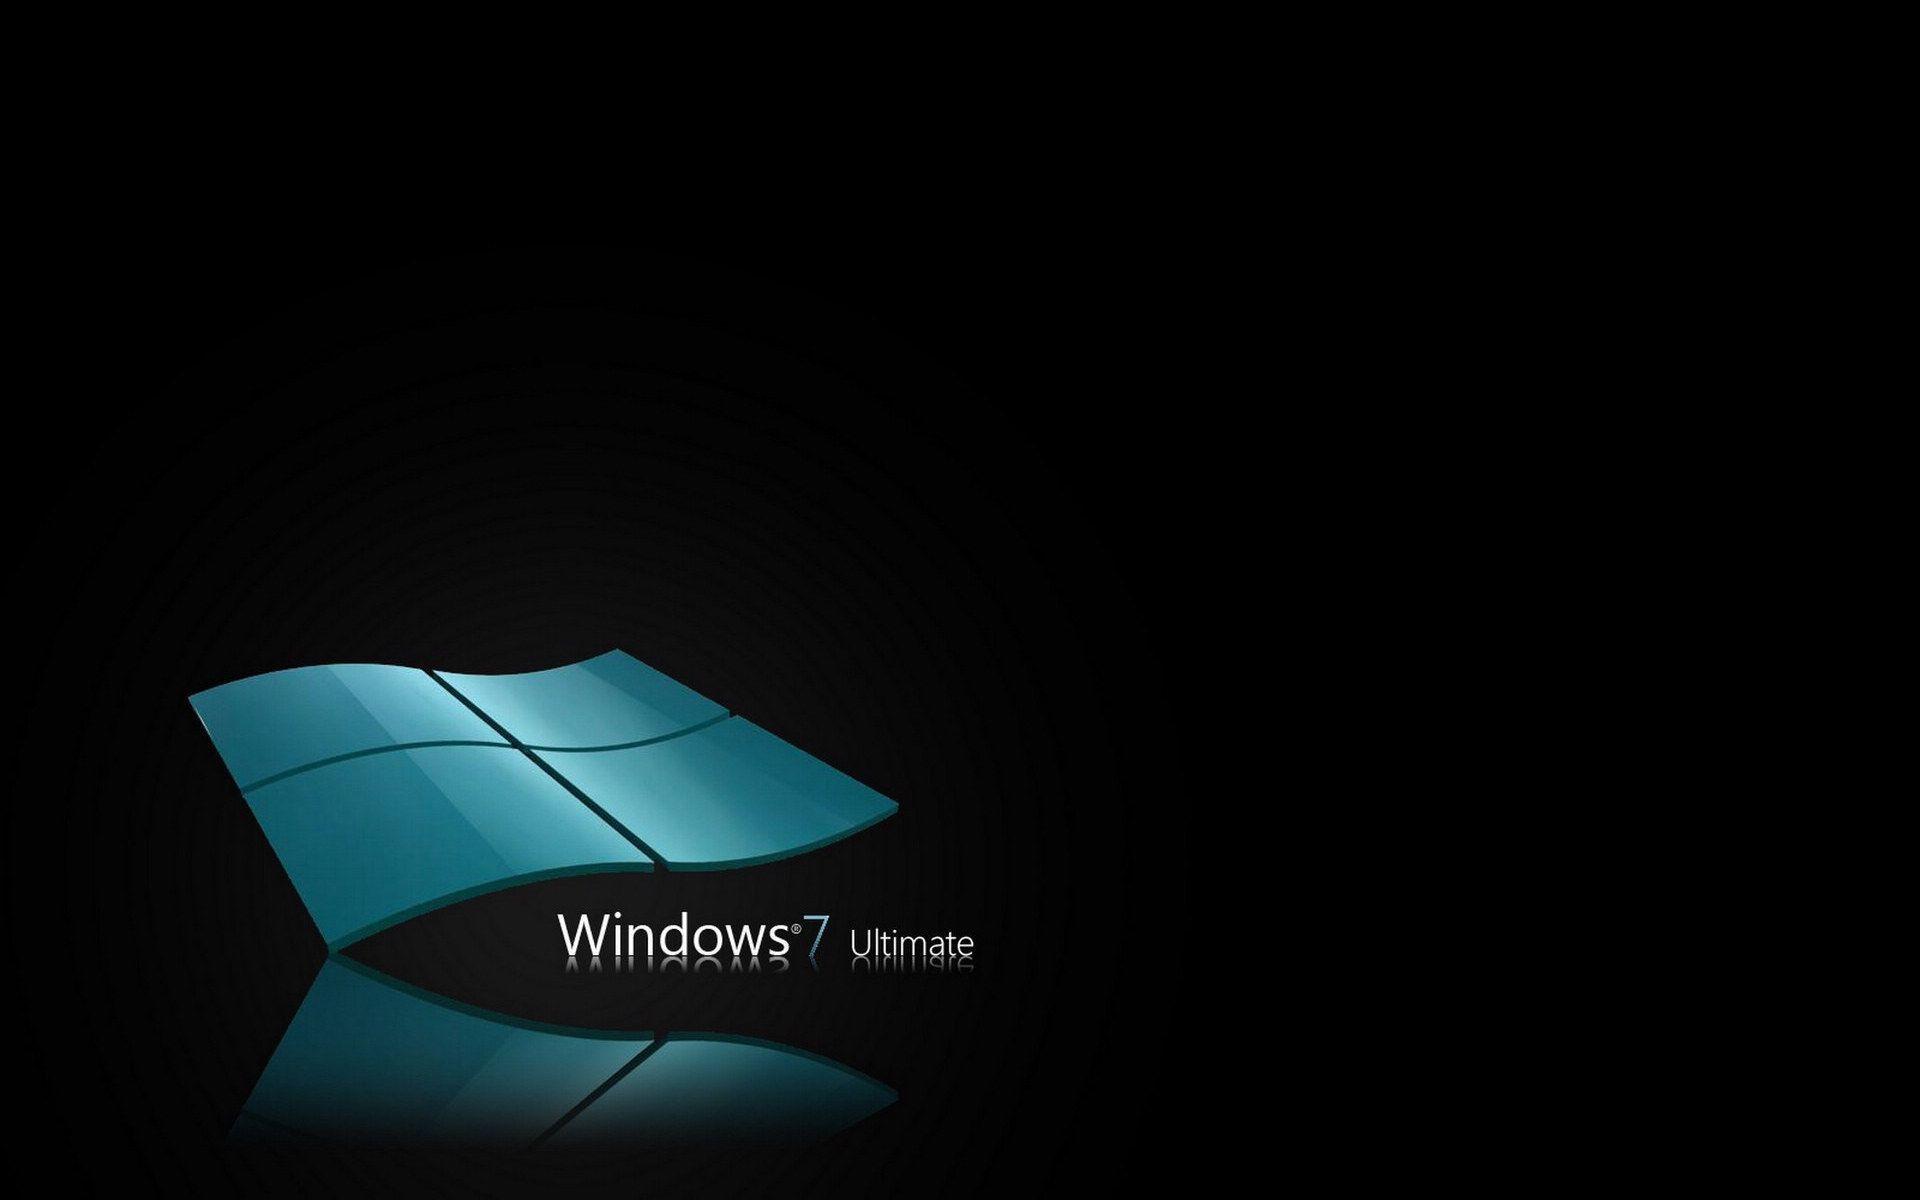 Hình nền Windows 7 Ultimate: Dành tặng người dùng Windows 7 Ultimate bức hình nền đẹp nhất, thể hiện sự bền vững, uy tín và đẳng cấp của Windows. Nền tối đa hoá chất lượng hình ảnh đem đến một trải nghiệm màn hình tuyệt vời giúp tăng cường sự sang trọng, phong độ cho máy tính của bạn.